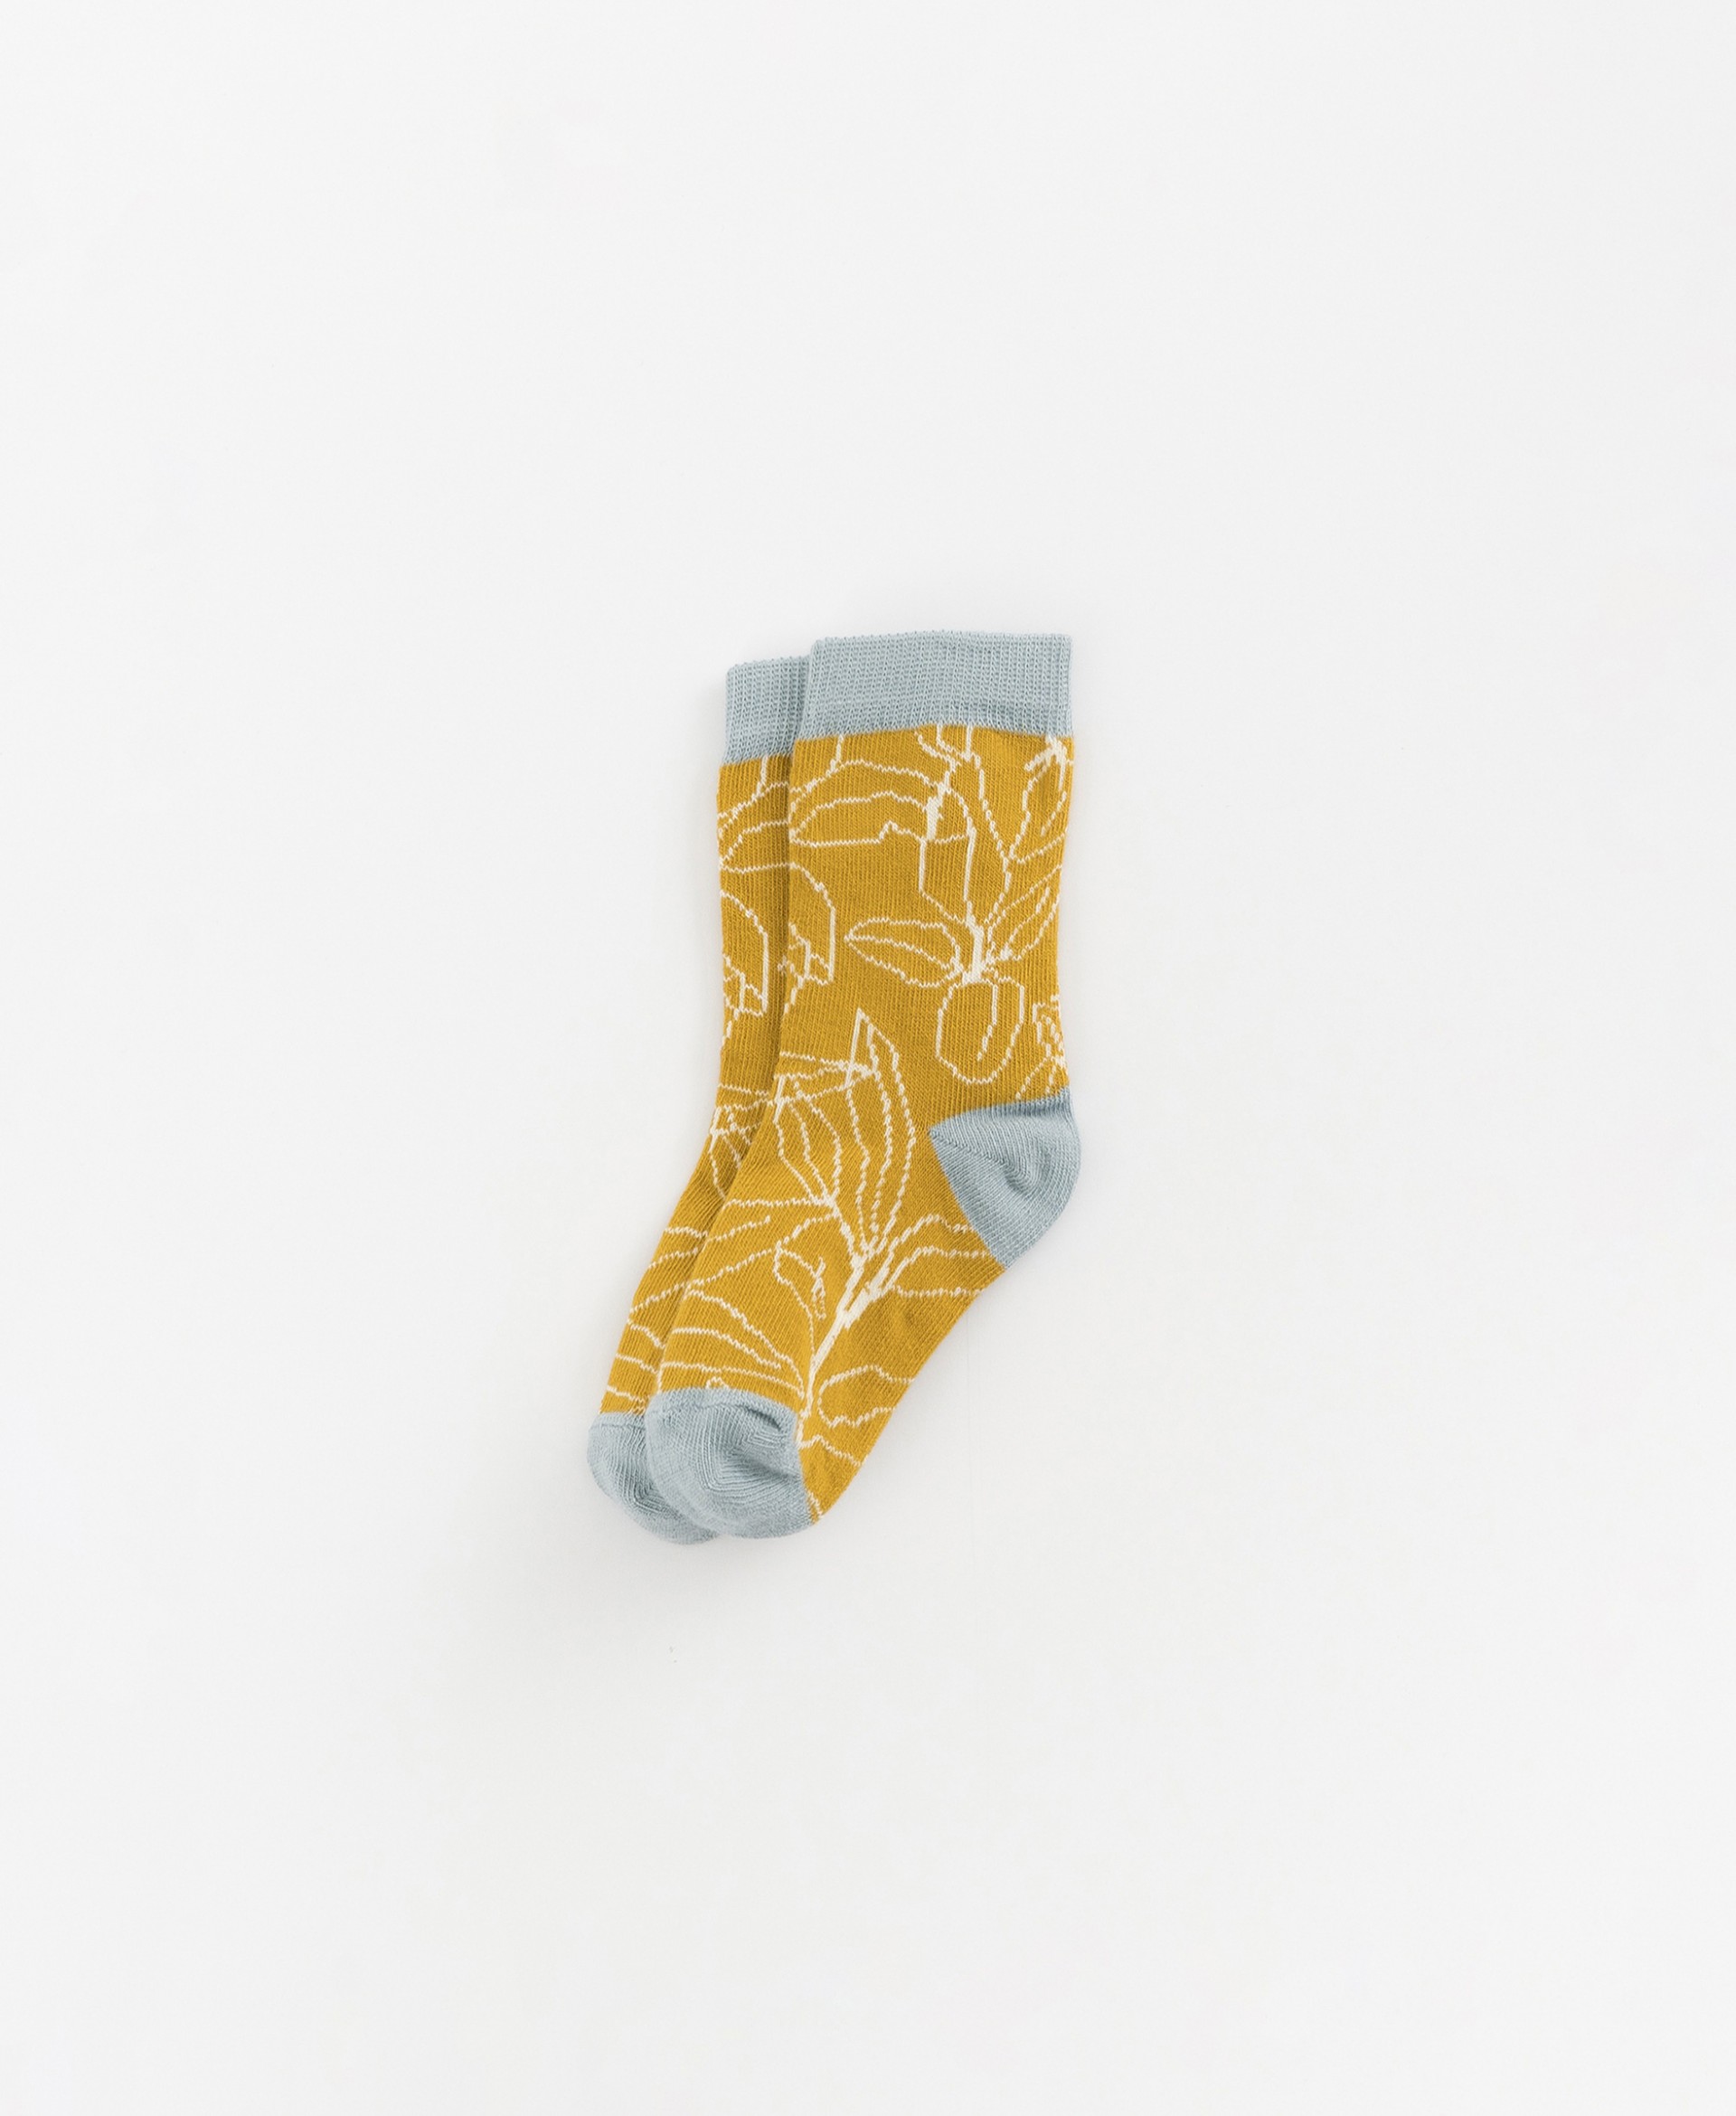 Printed socks in organic cotton | Organic Care